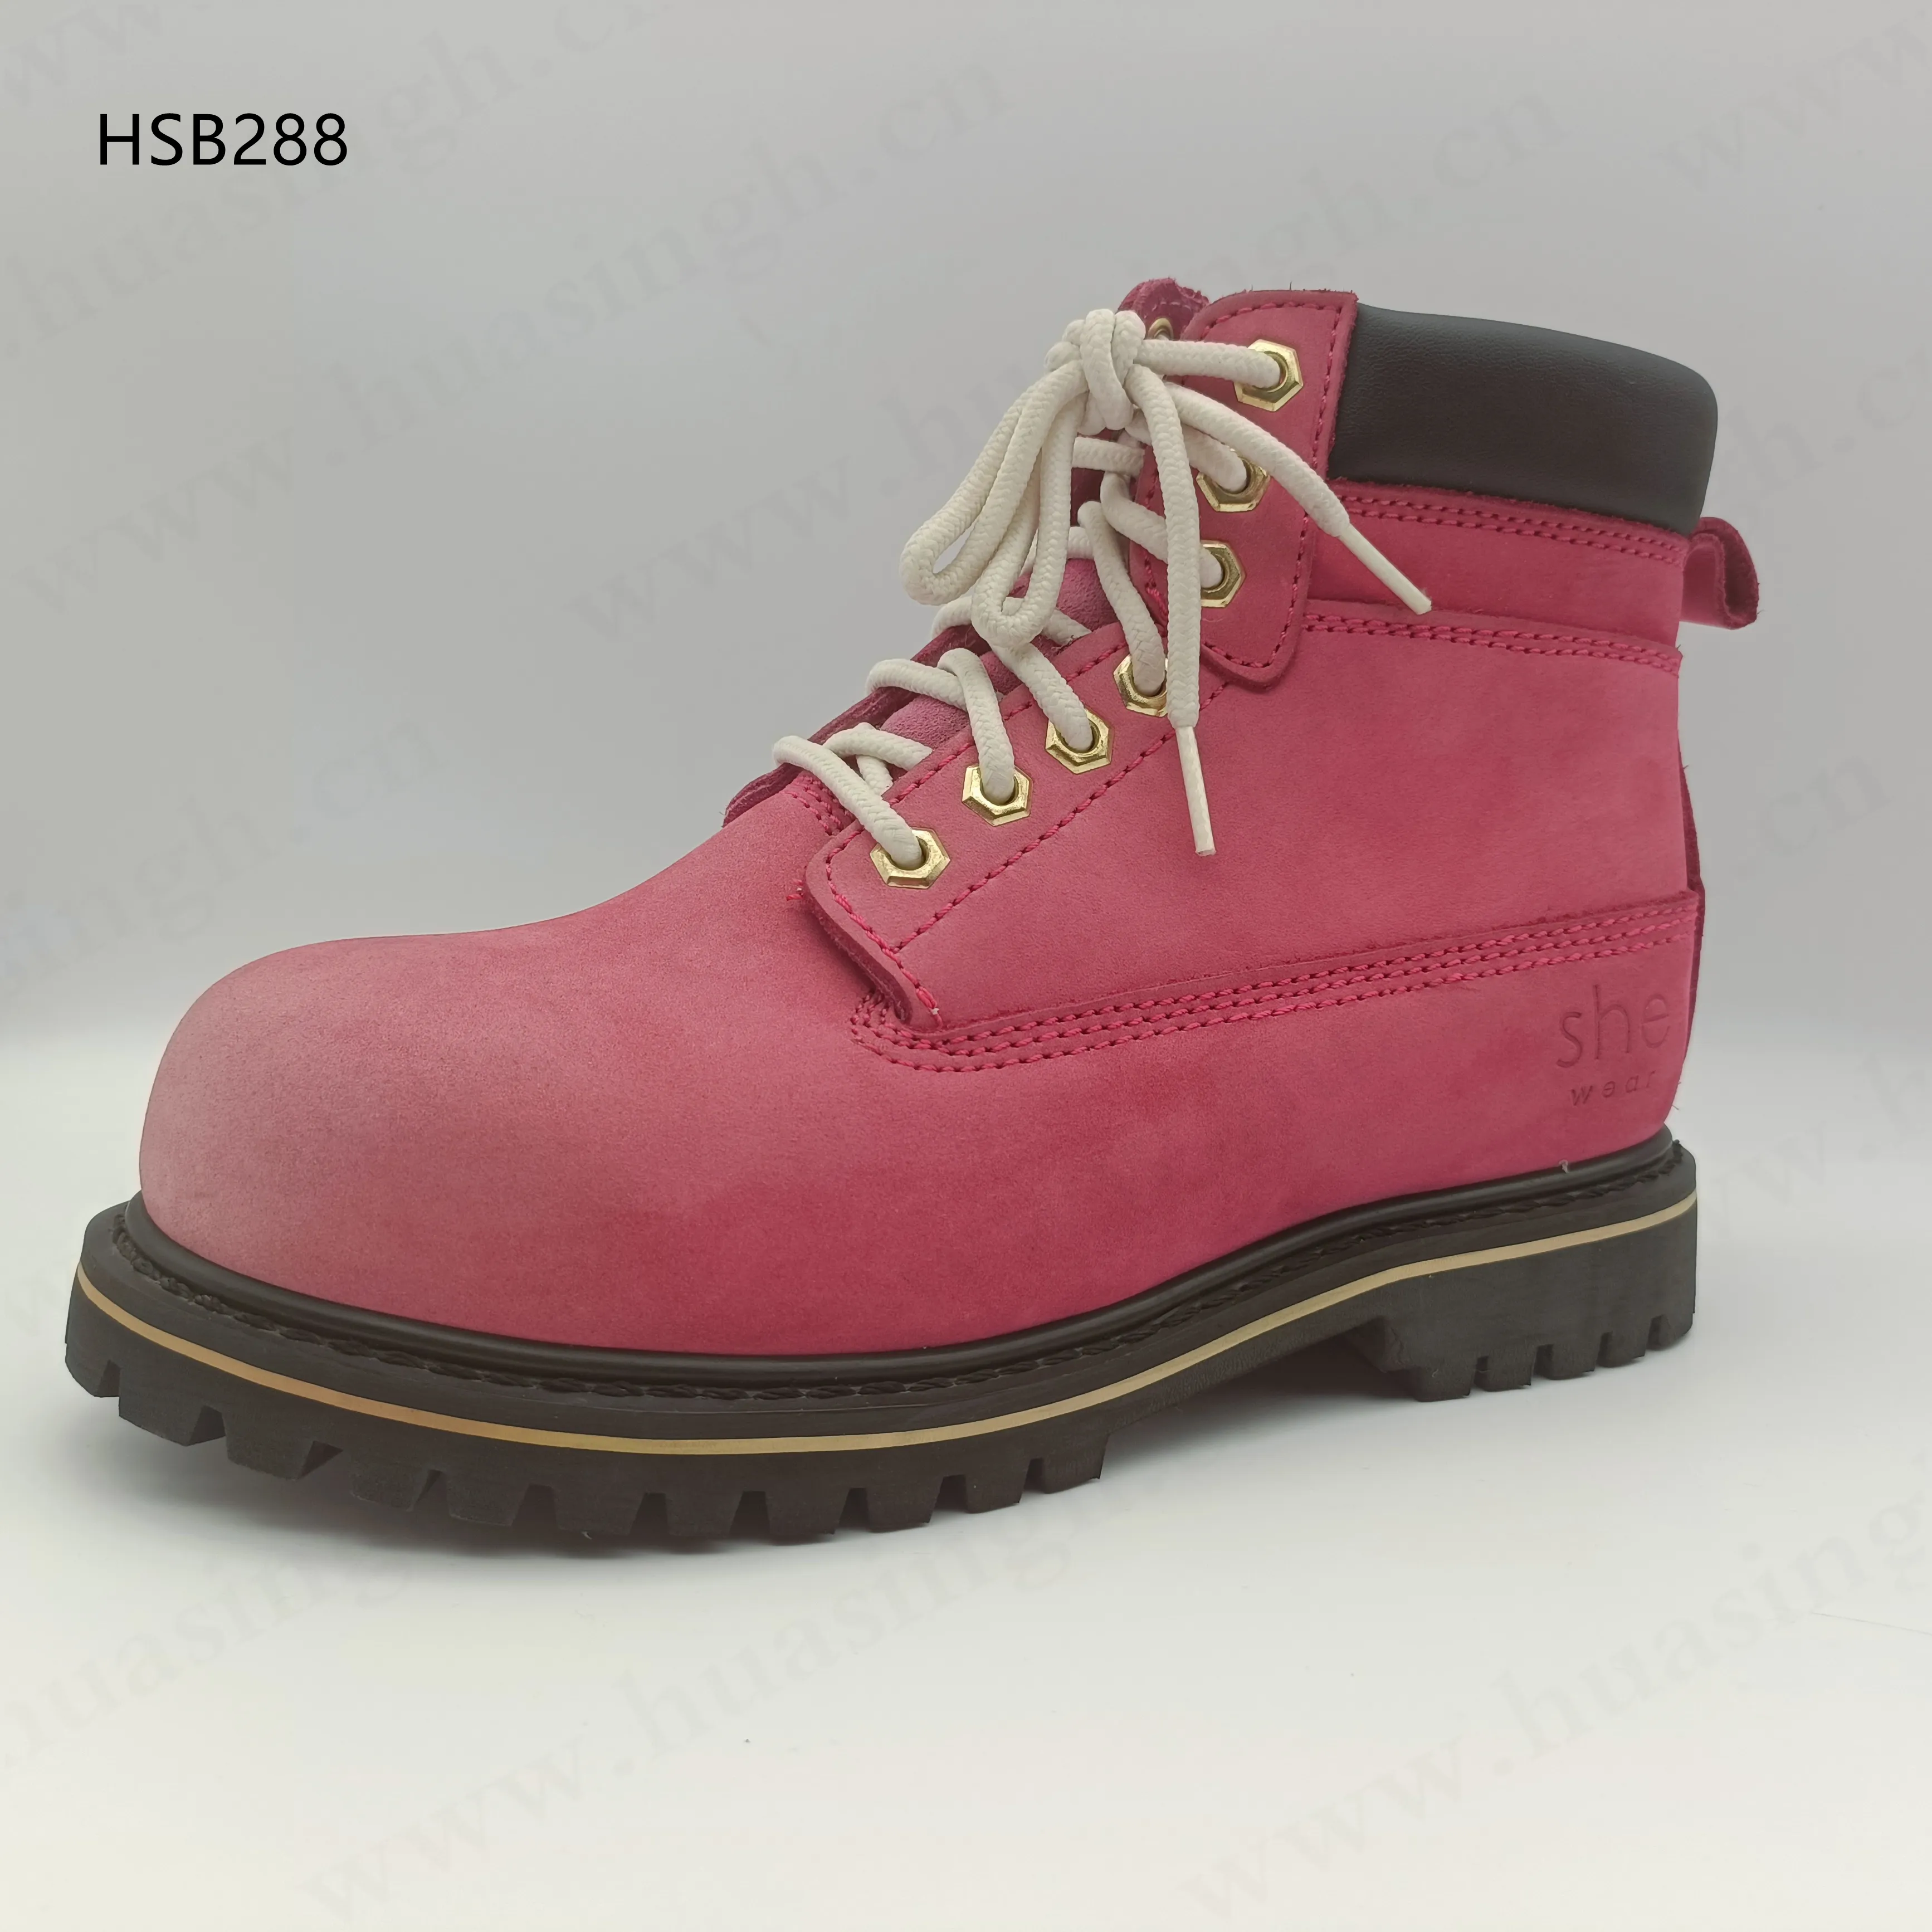 安全靴HSB288 LXG高外観ピンク色女性作業安全靴工場安い価格S3標準安全ブーツ